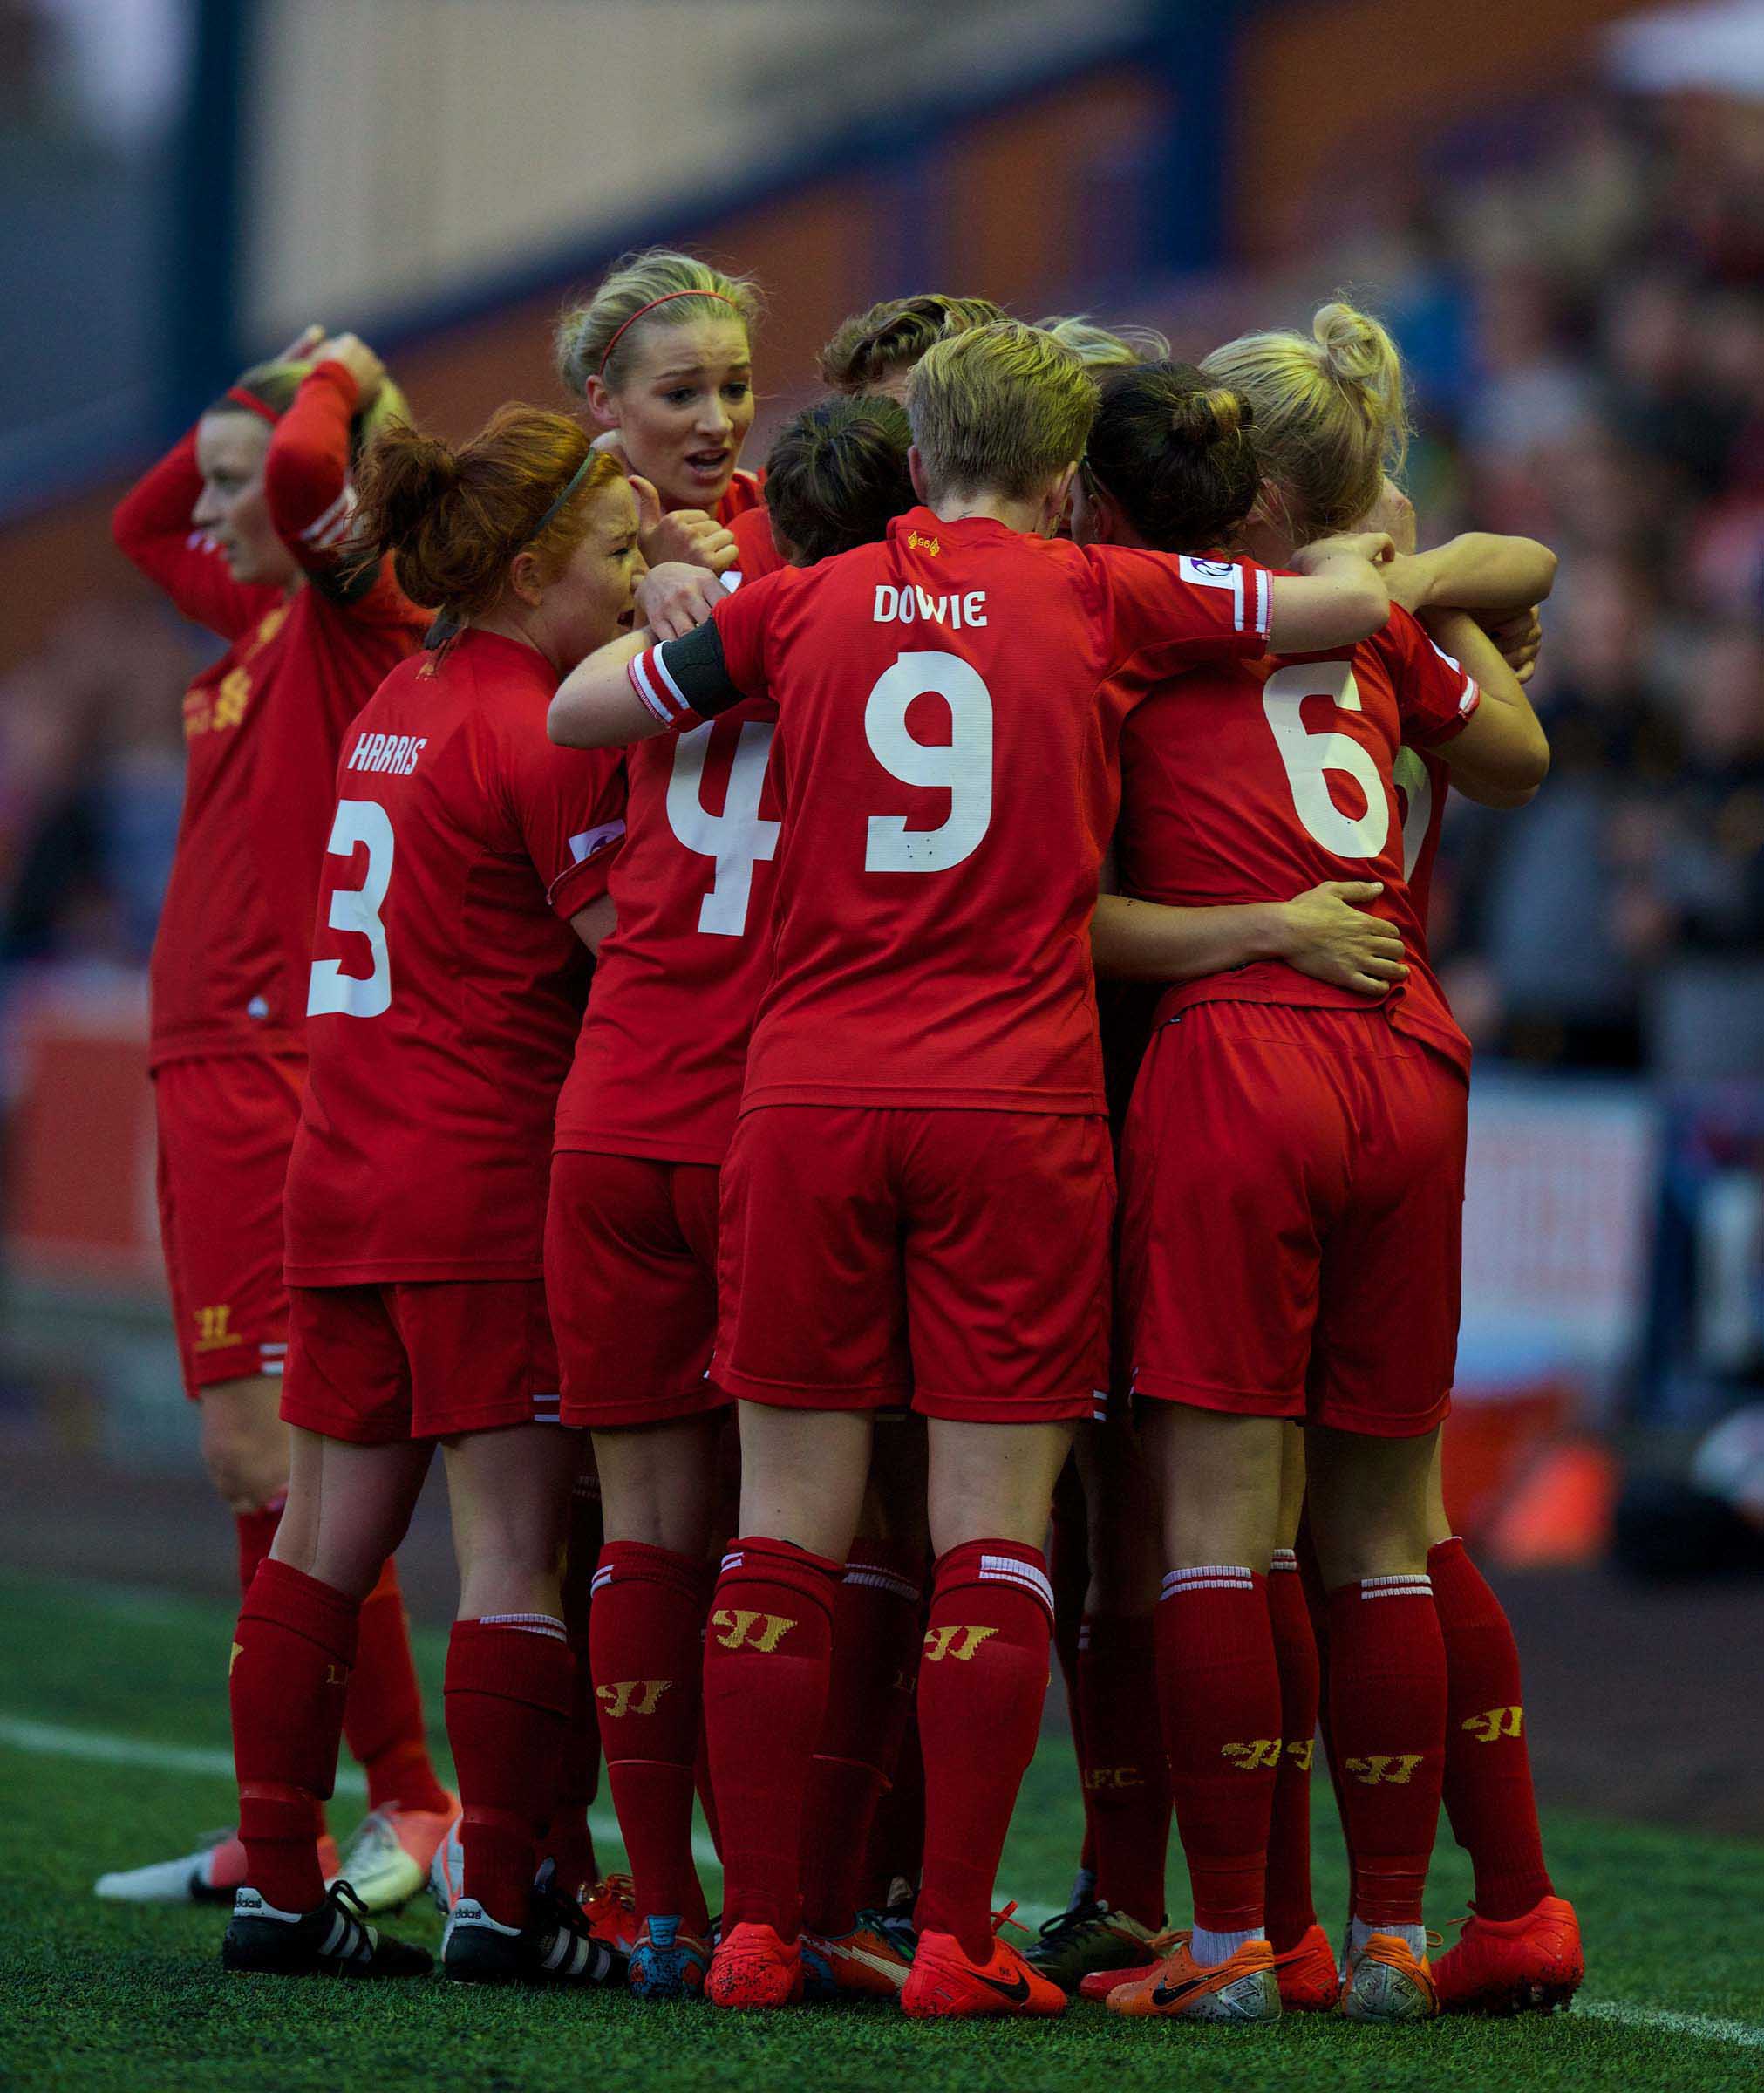 Liverpool Ladies 2 Sunderland Ladies 2: Match report